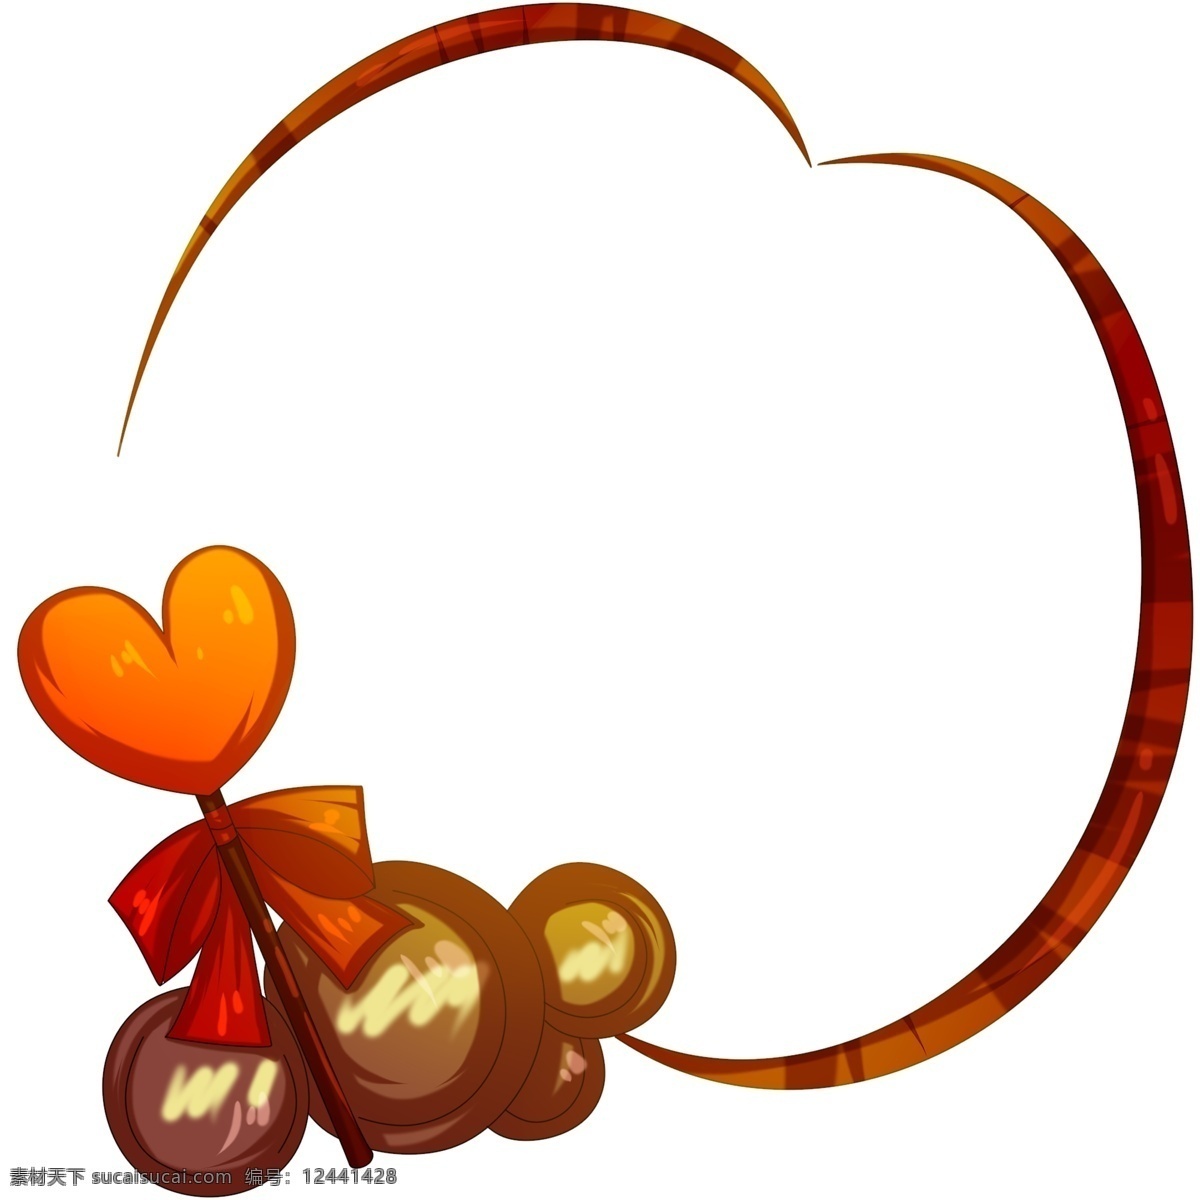 爱心 棒棒糖 边框 插画 爱心棒棒糖 情人节棒棒糖 爱心边框 巧克力边框 棕红色边框 爱心糖果